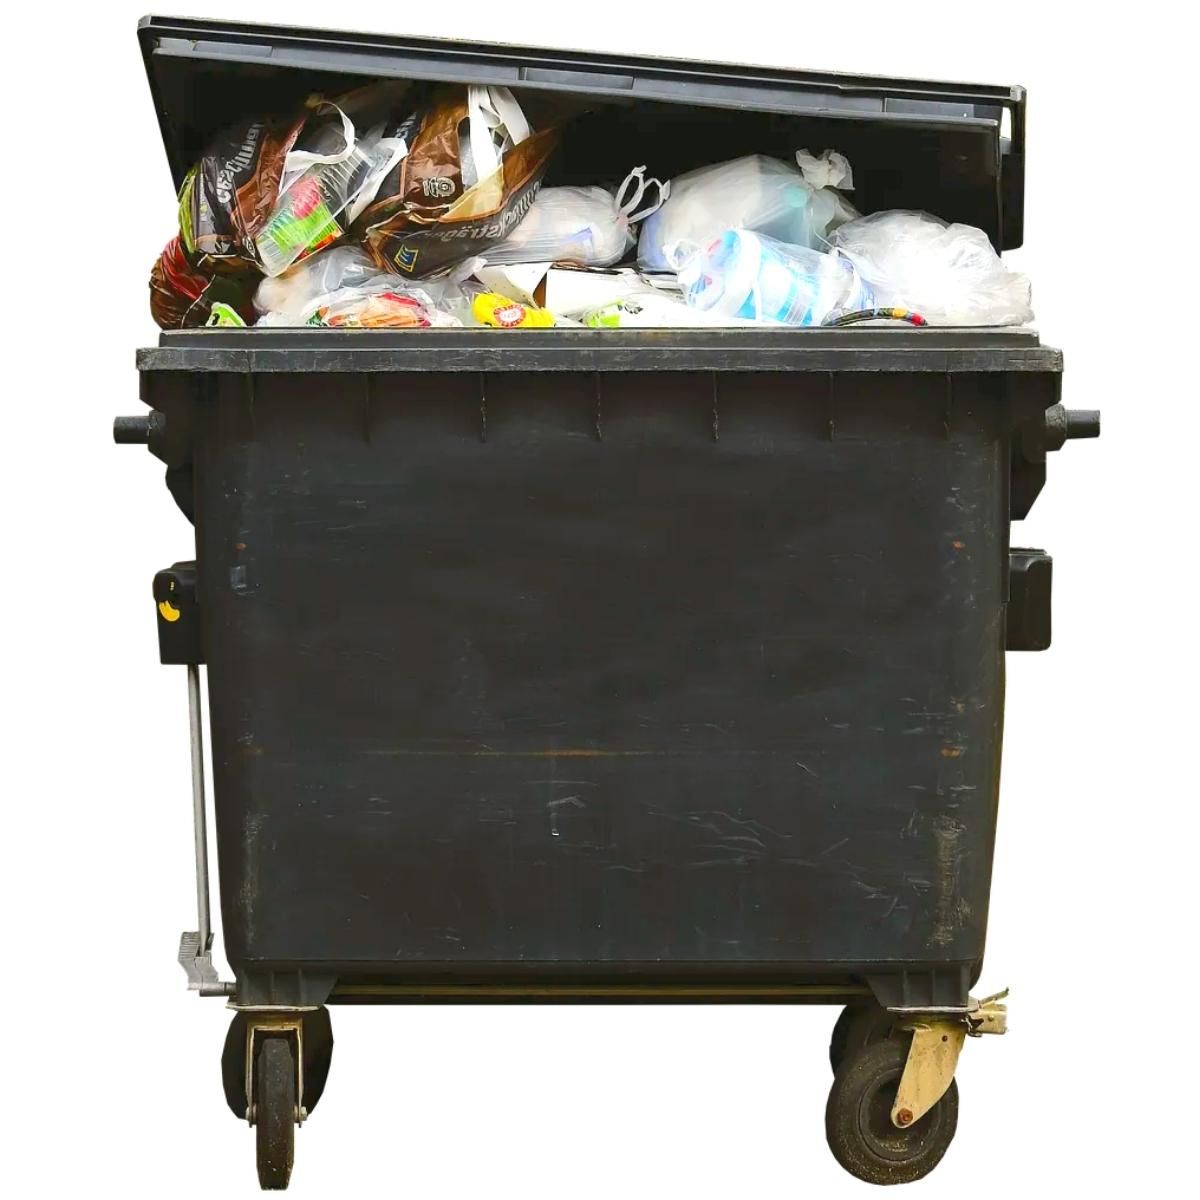 Foto sobre fondo blanco de un contenedor de basuras de color gris dónde va la basura que no se recicla.